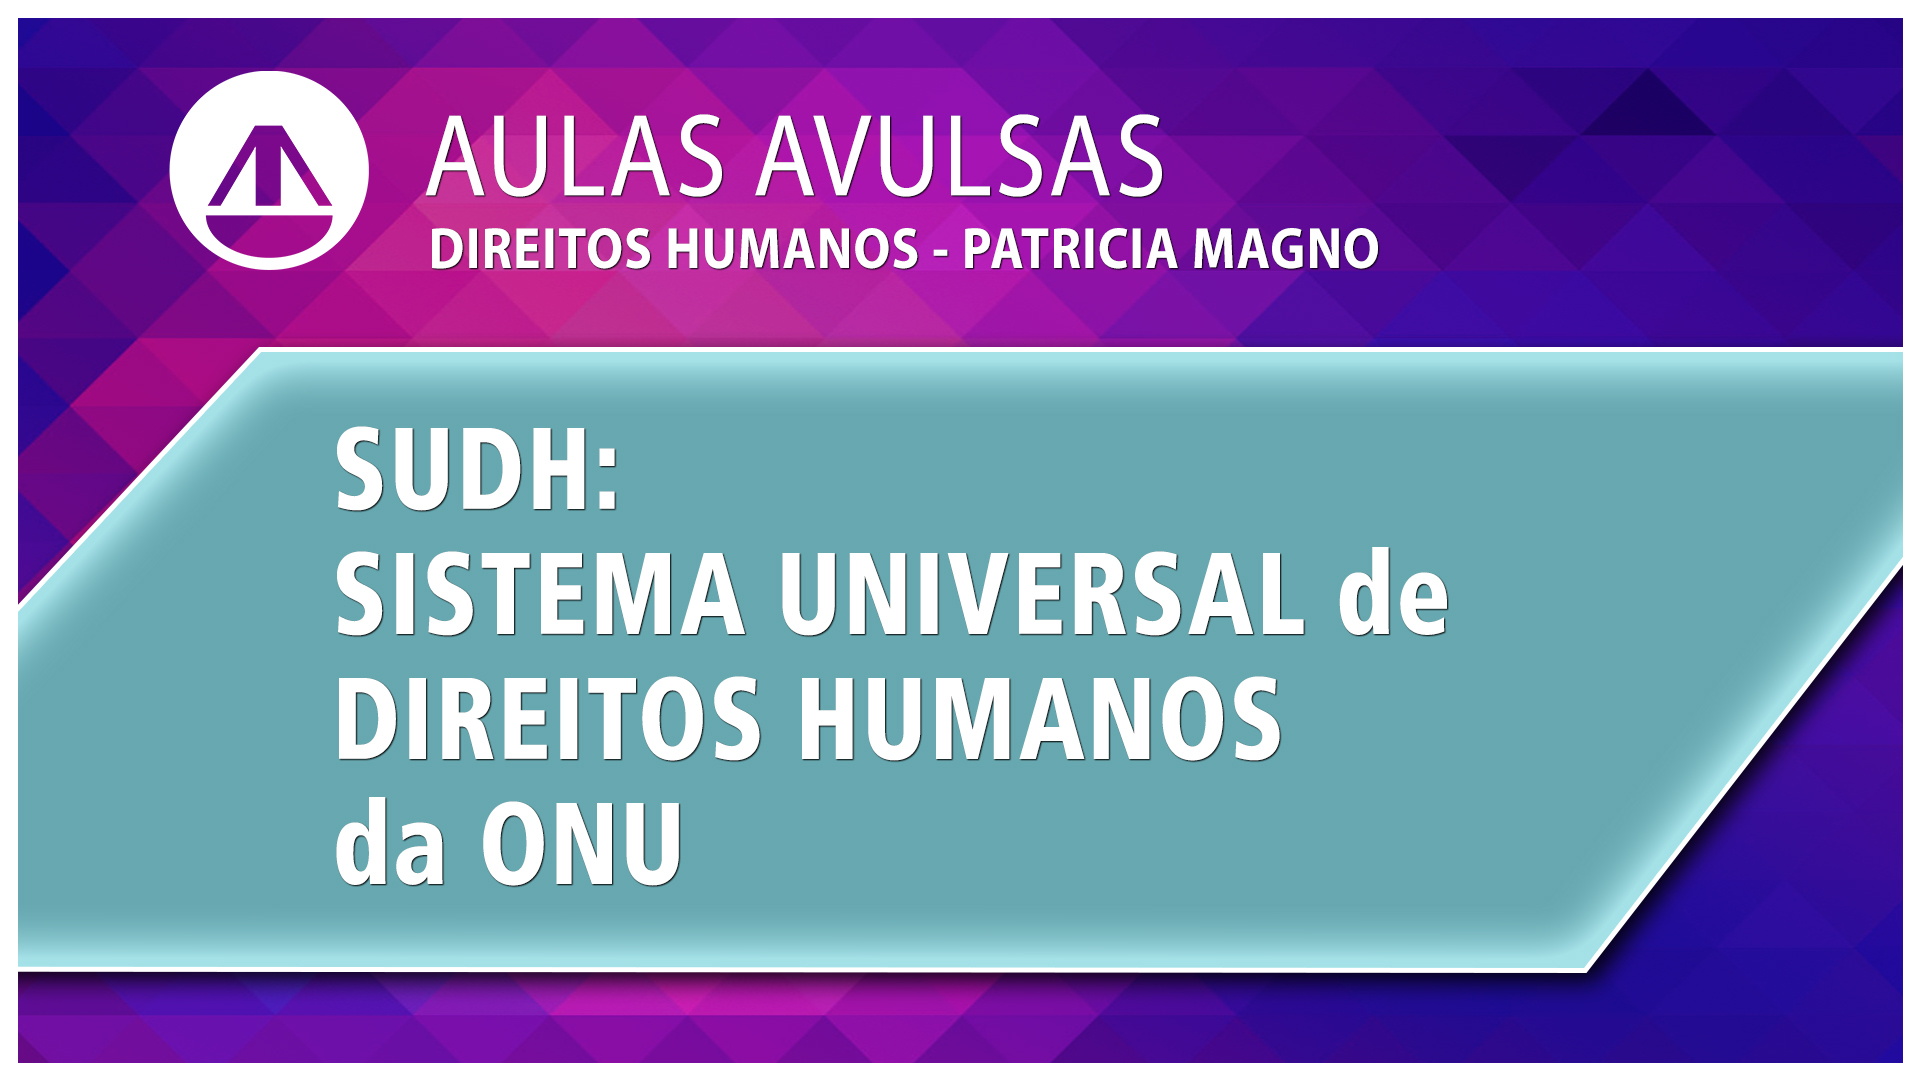 SUDH: Sistema Universal de Direitos Humanos da ONU